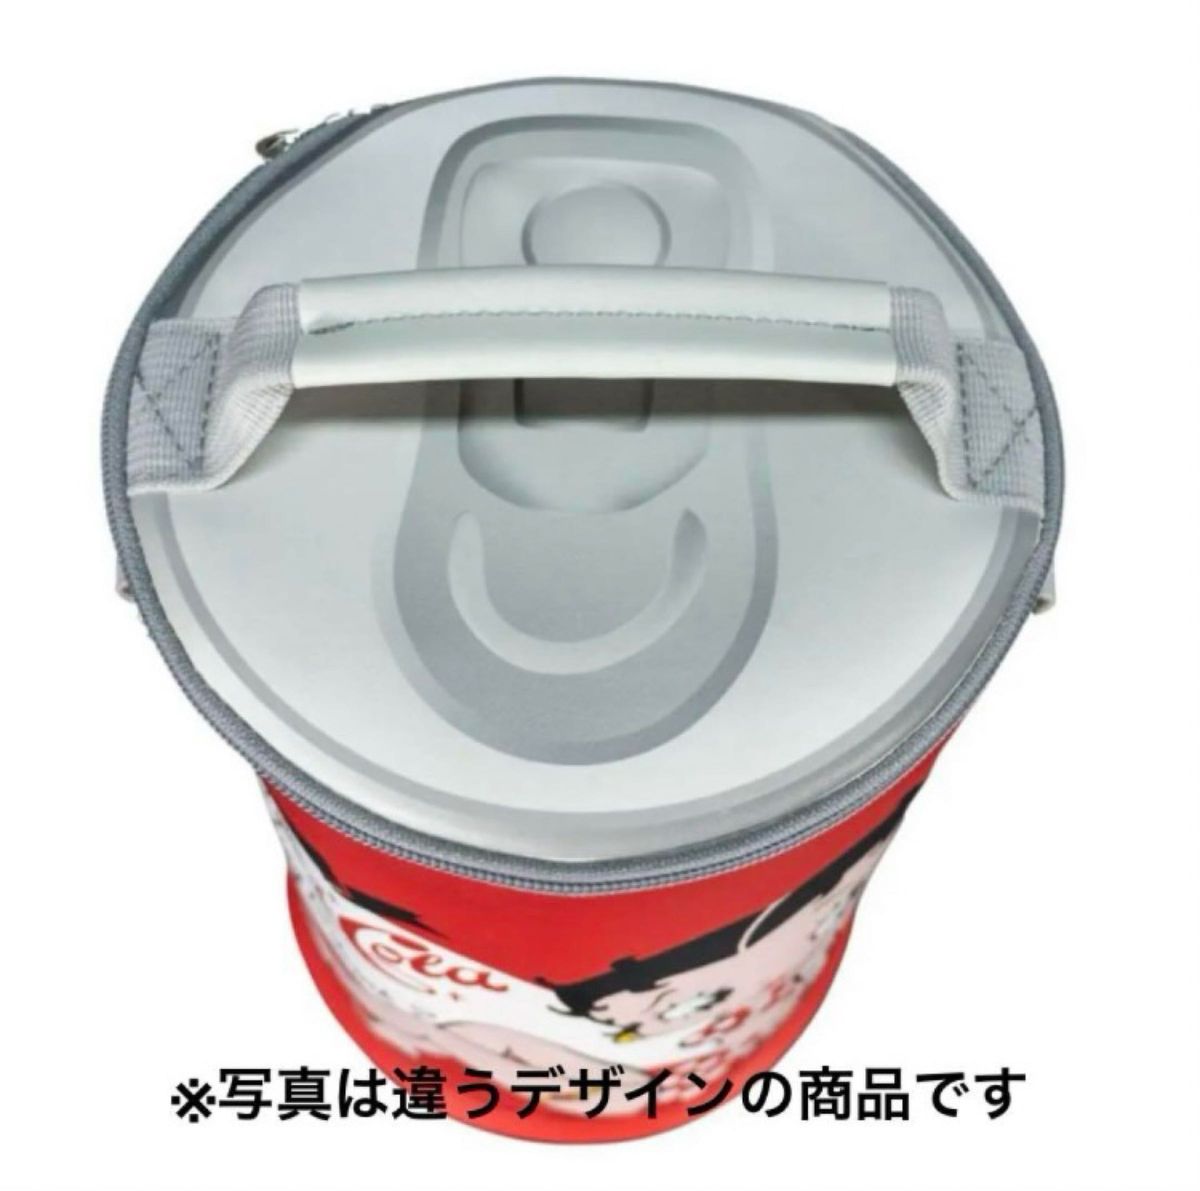 ドリンク缶型クーラーバッグ 保冷バッグ ビッグウェーブ アウトドア用品